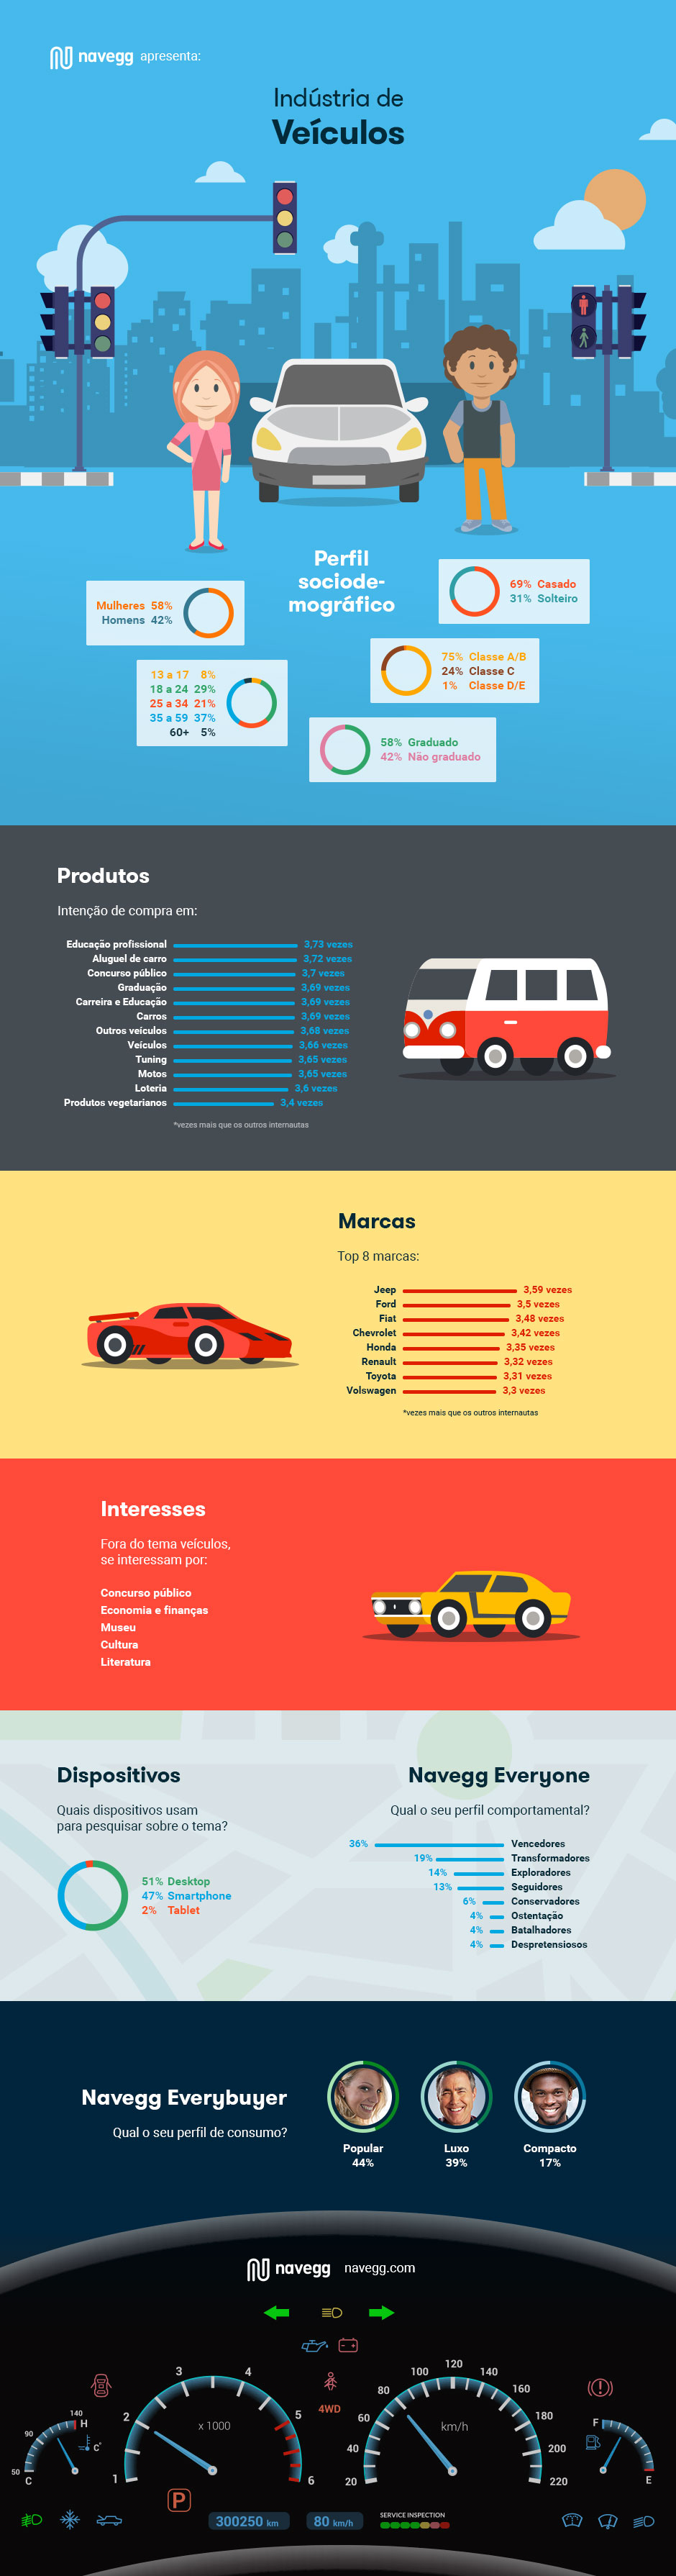 Infográfico - O perfil dos brasileiros interessados em veículos